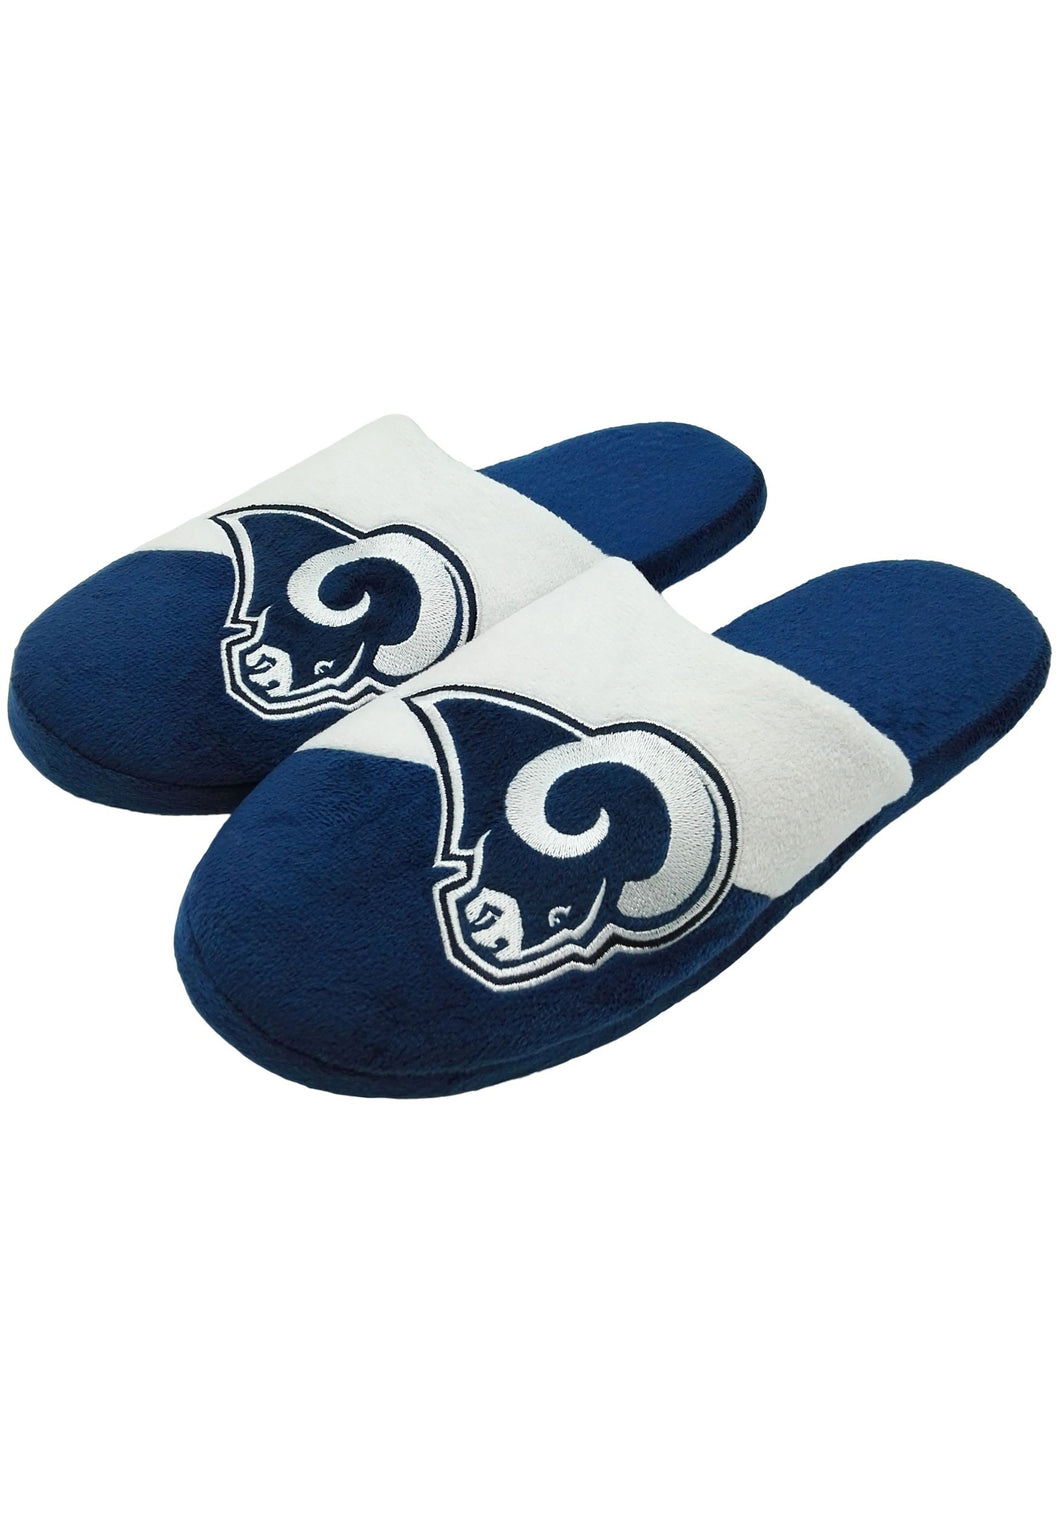 Los Angeles Rams NFL Colorblock Slide Slippers